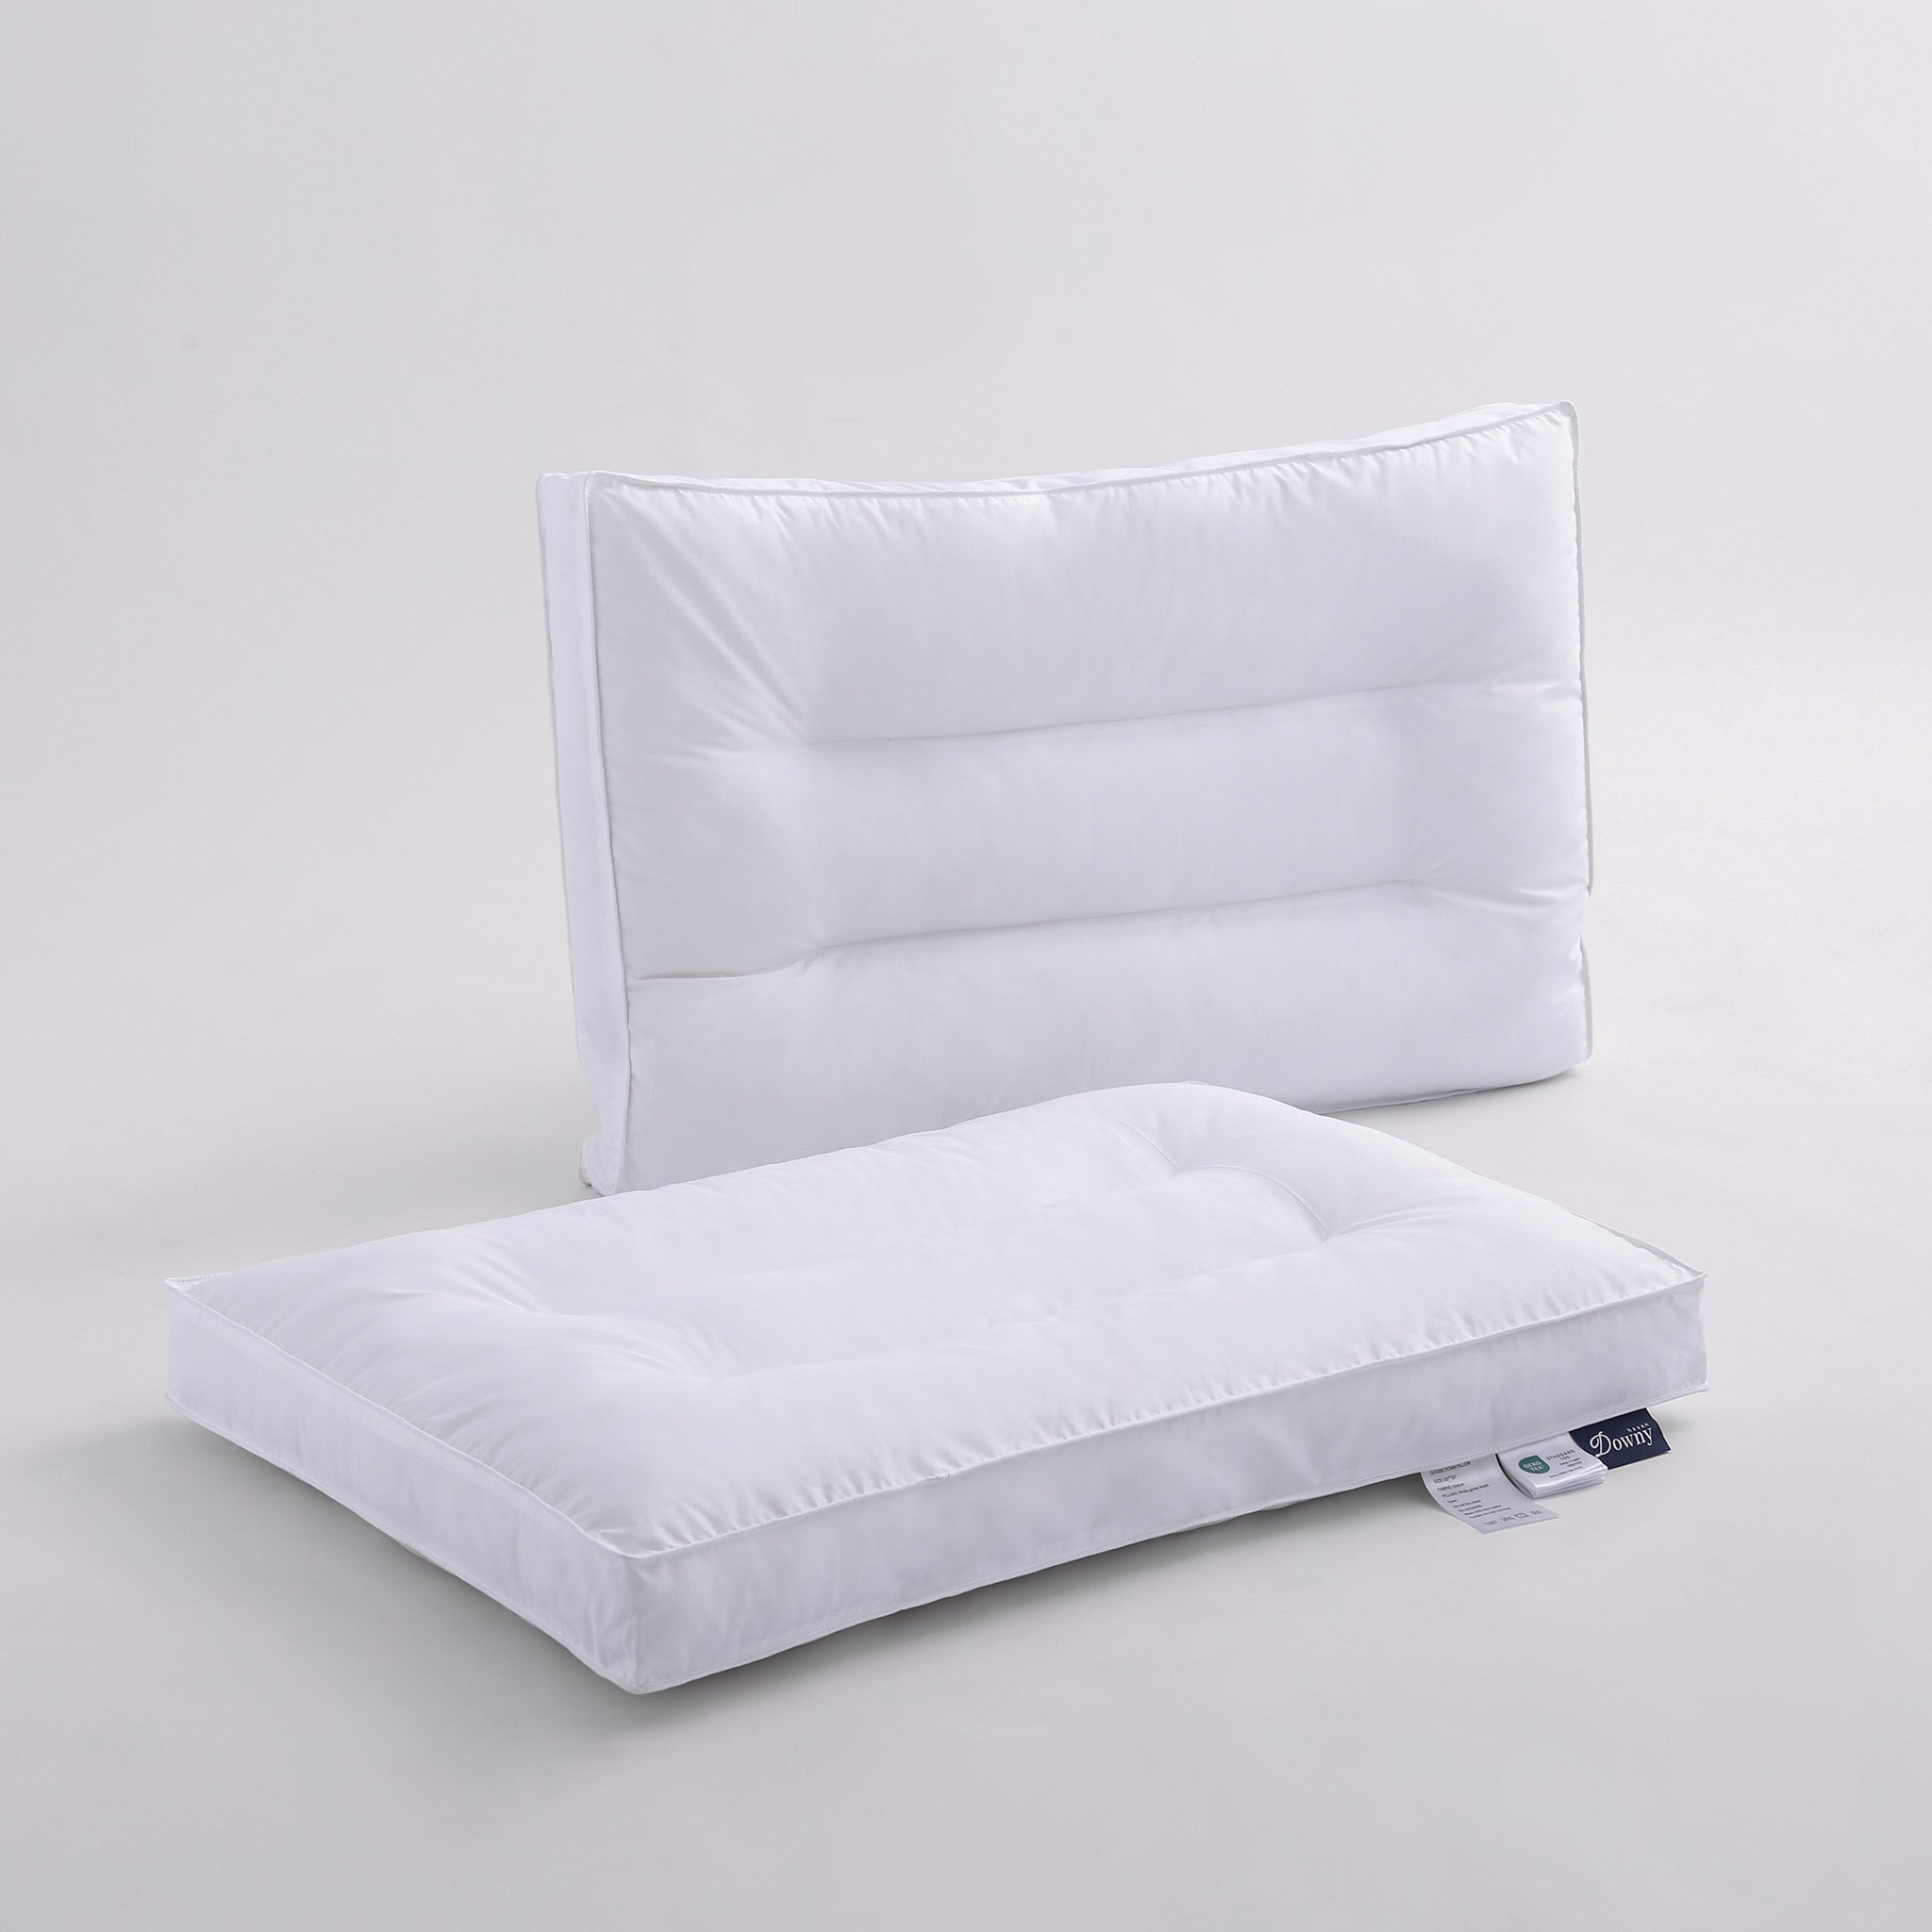 Snowfall Comfort Balance Goose Down Pillow